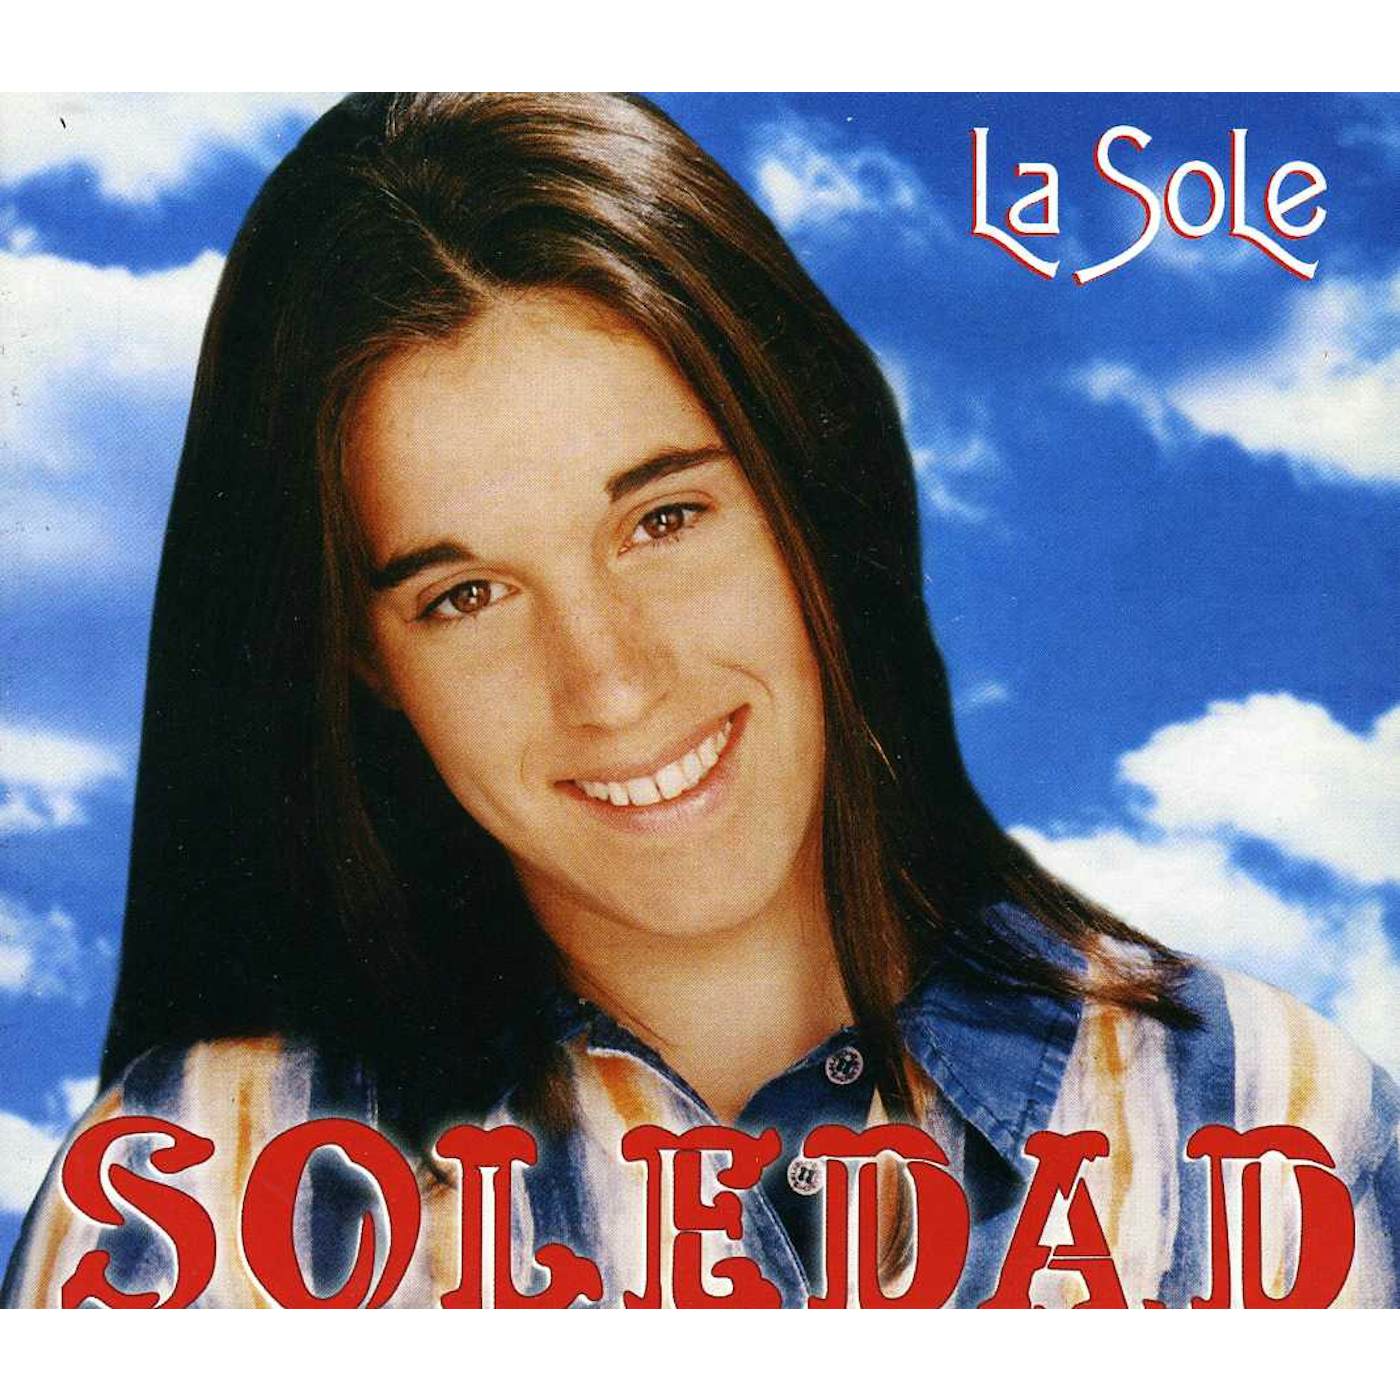 Soledad LA SOLE CD